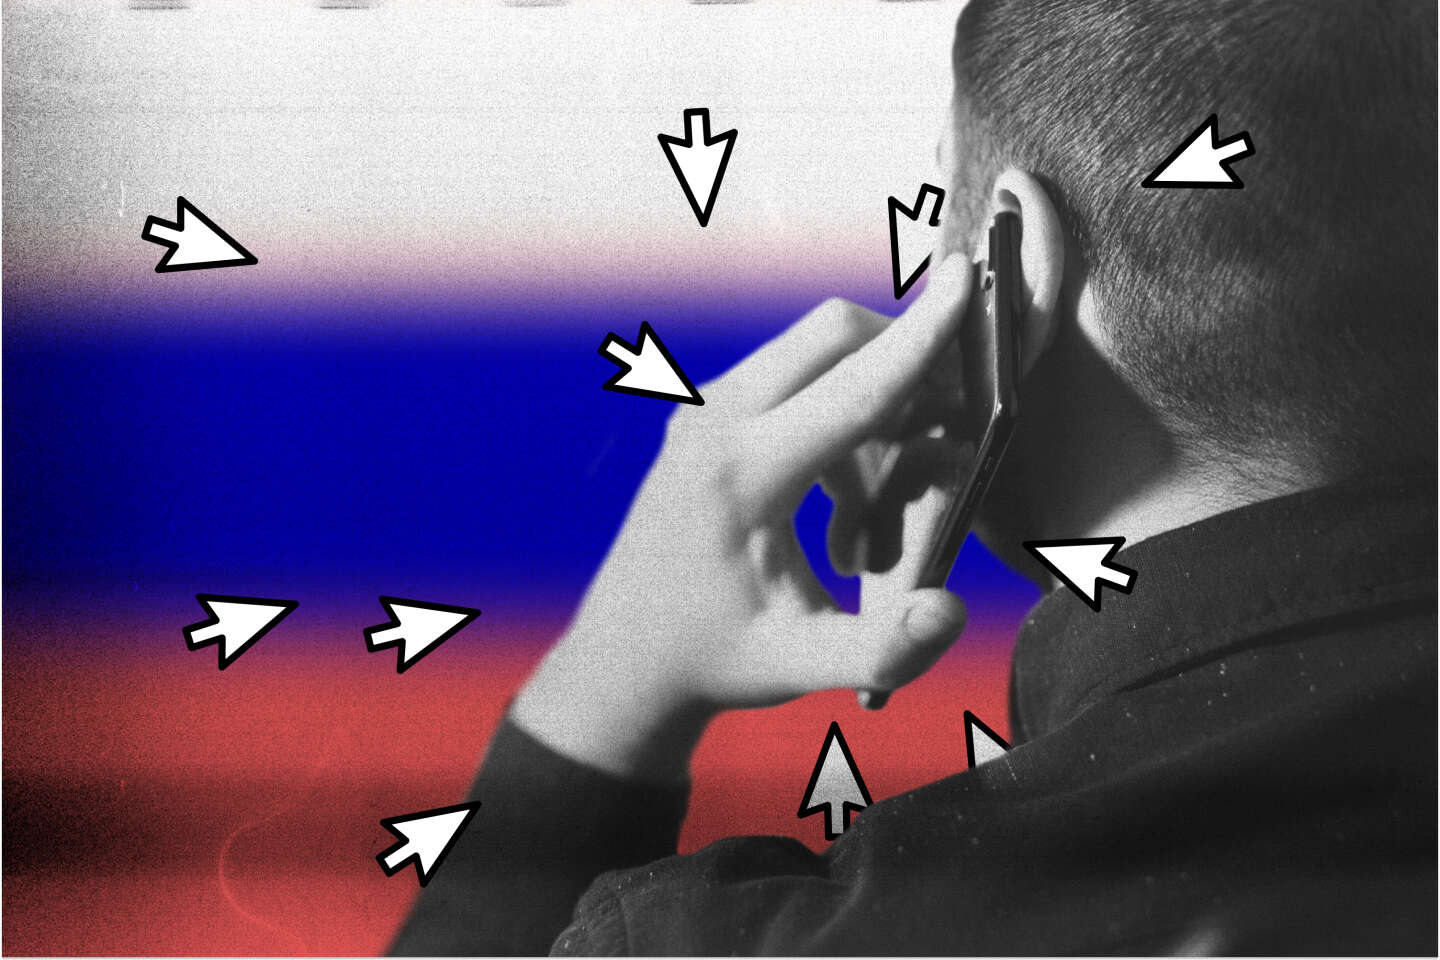 Derrière l’influence numérique russe, un système de sous-traitance généralisée